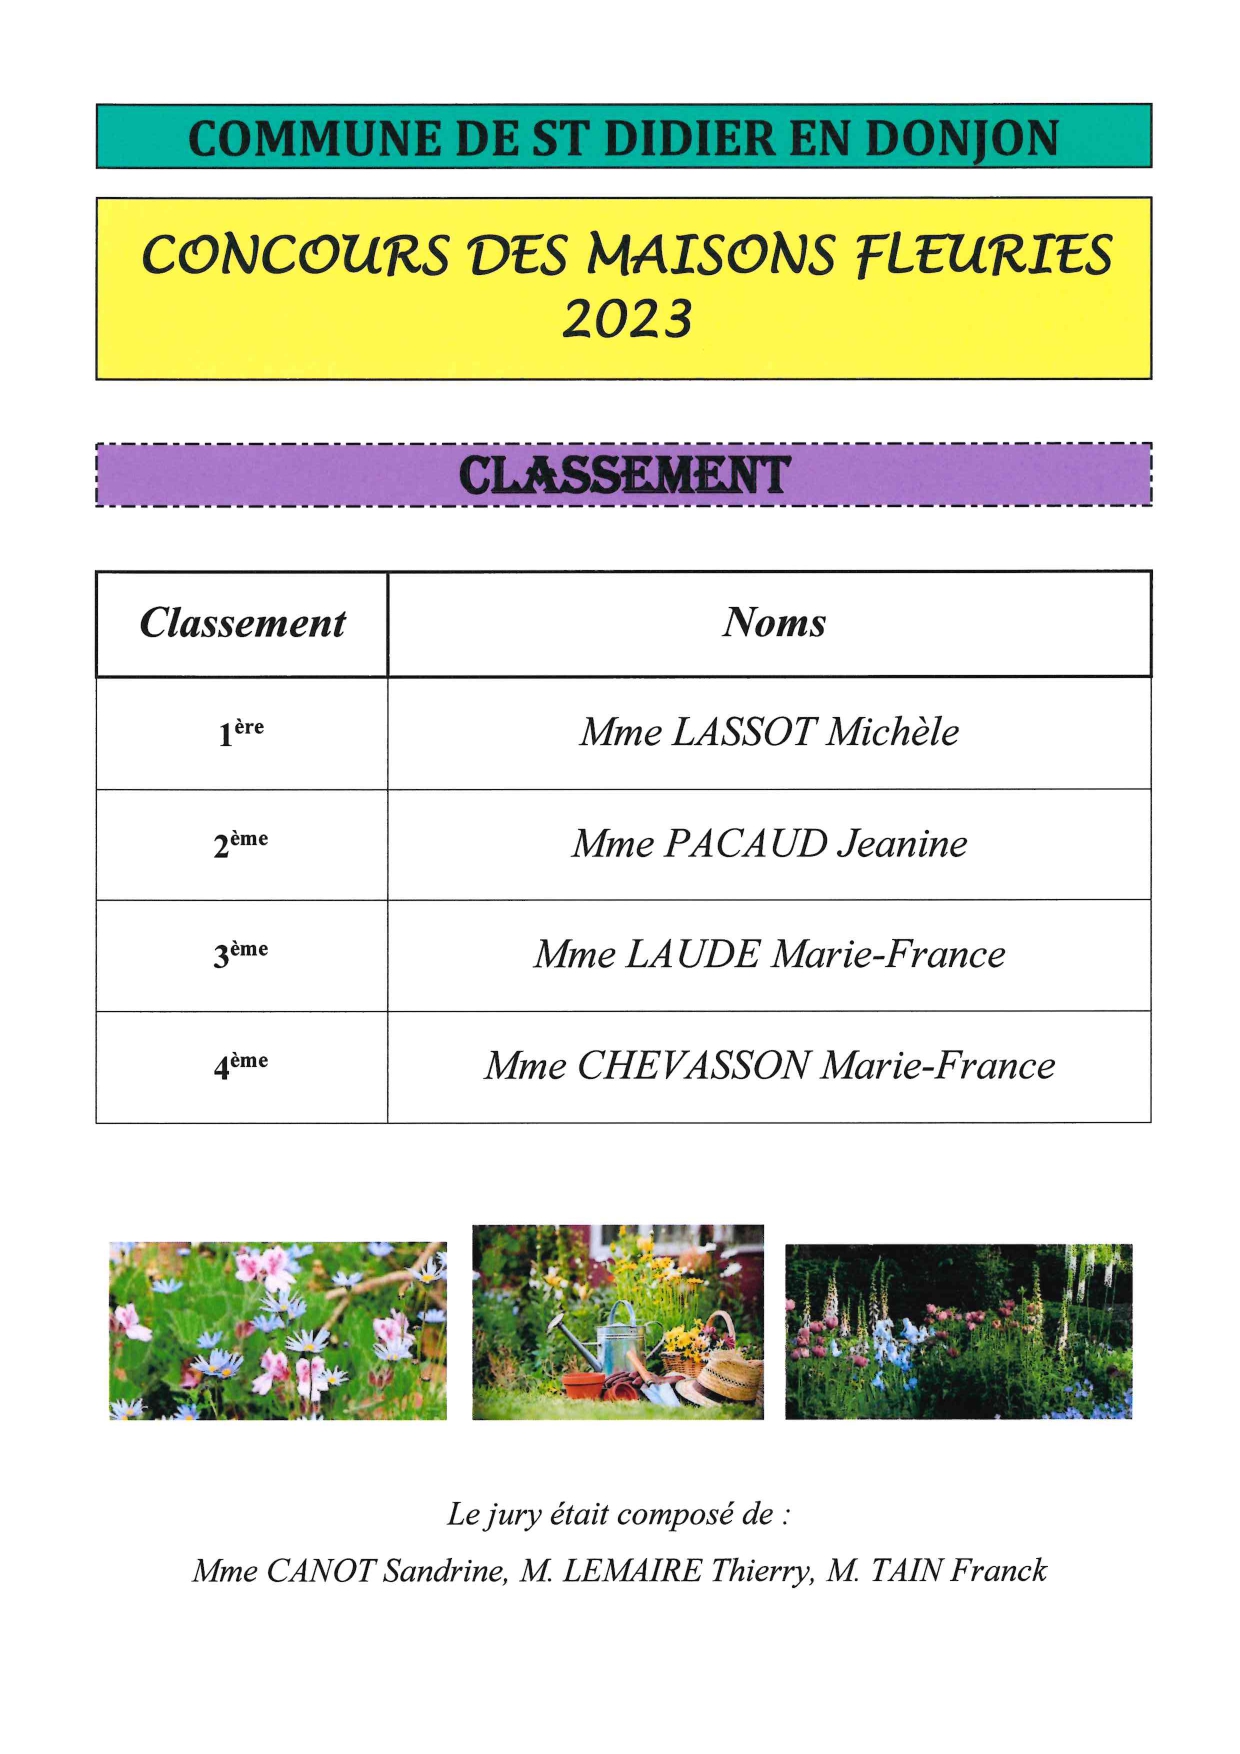 Résultat concours des maisons fleuries 2023